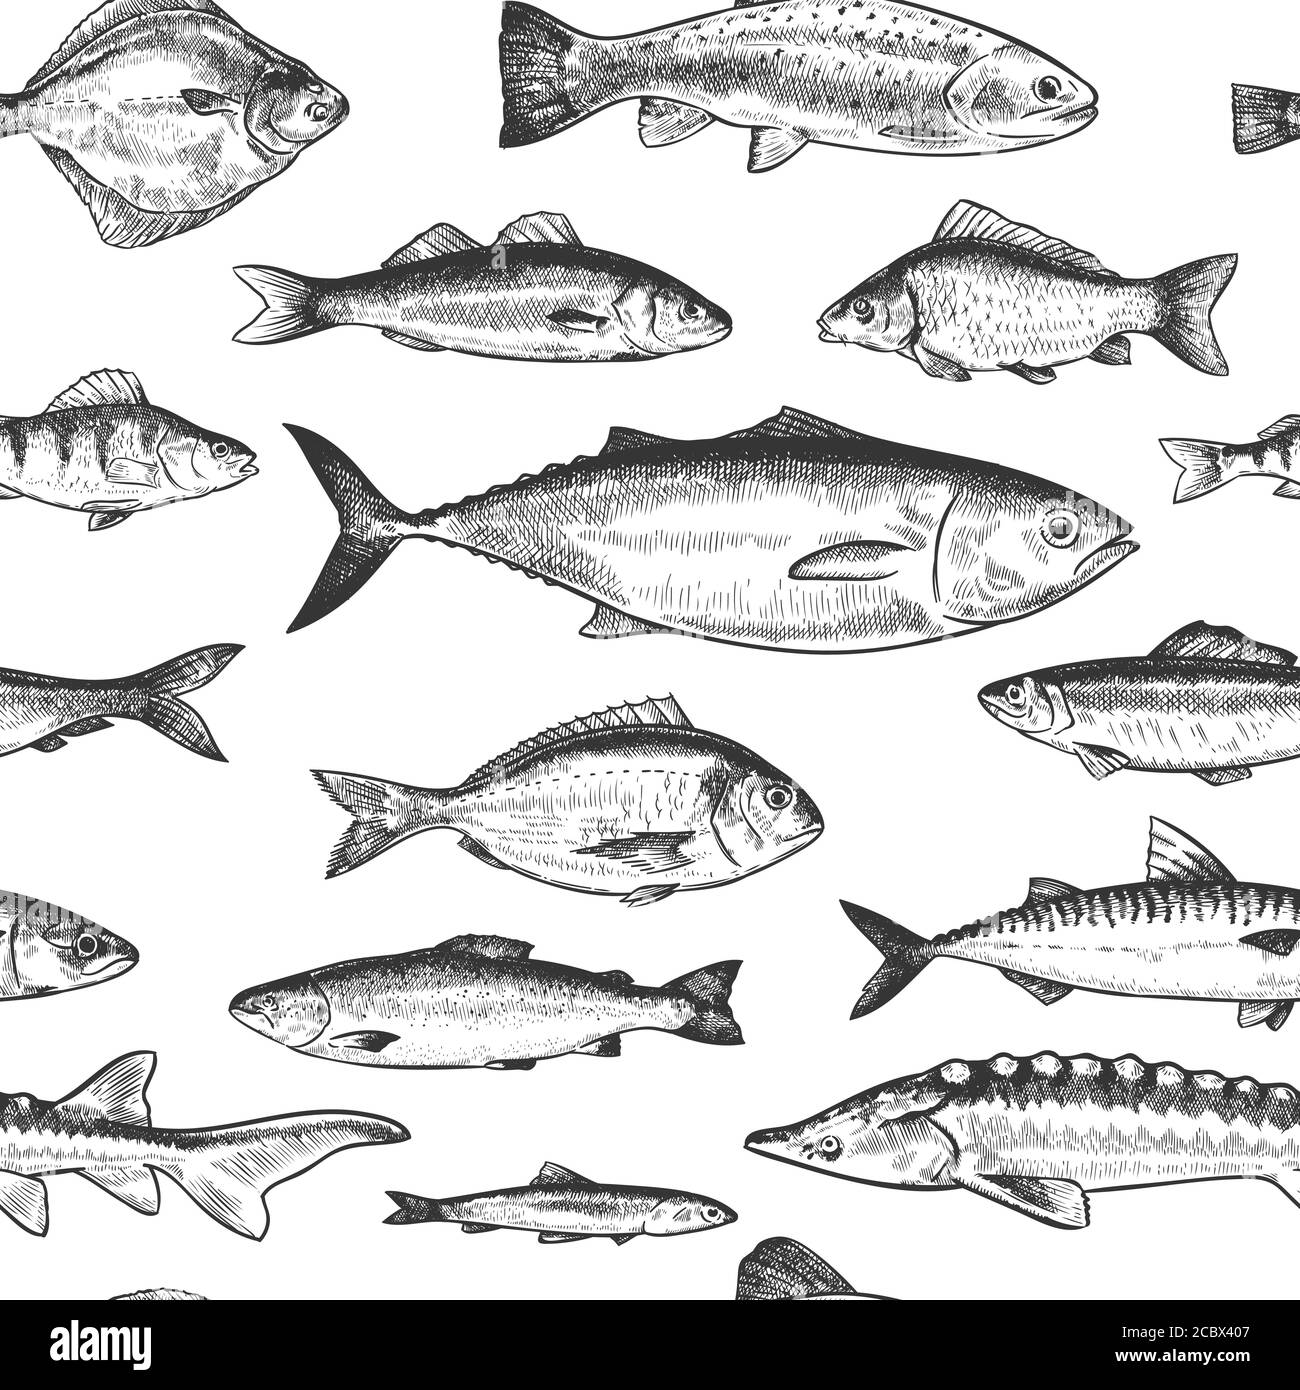 Nahtloses Fischmuster. Hand gezeichnet verschiedene Meer und Fluss Fische, marine Unterwasserleben monochrome Druck Tapete Skizze Vektor Textur Stock Vektor